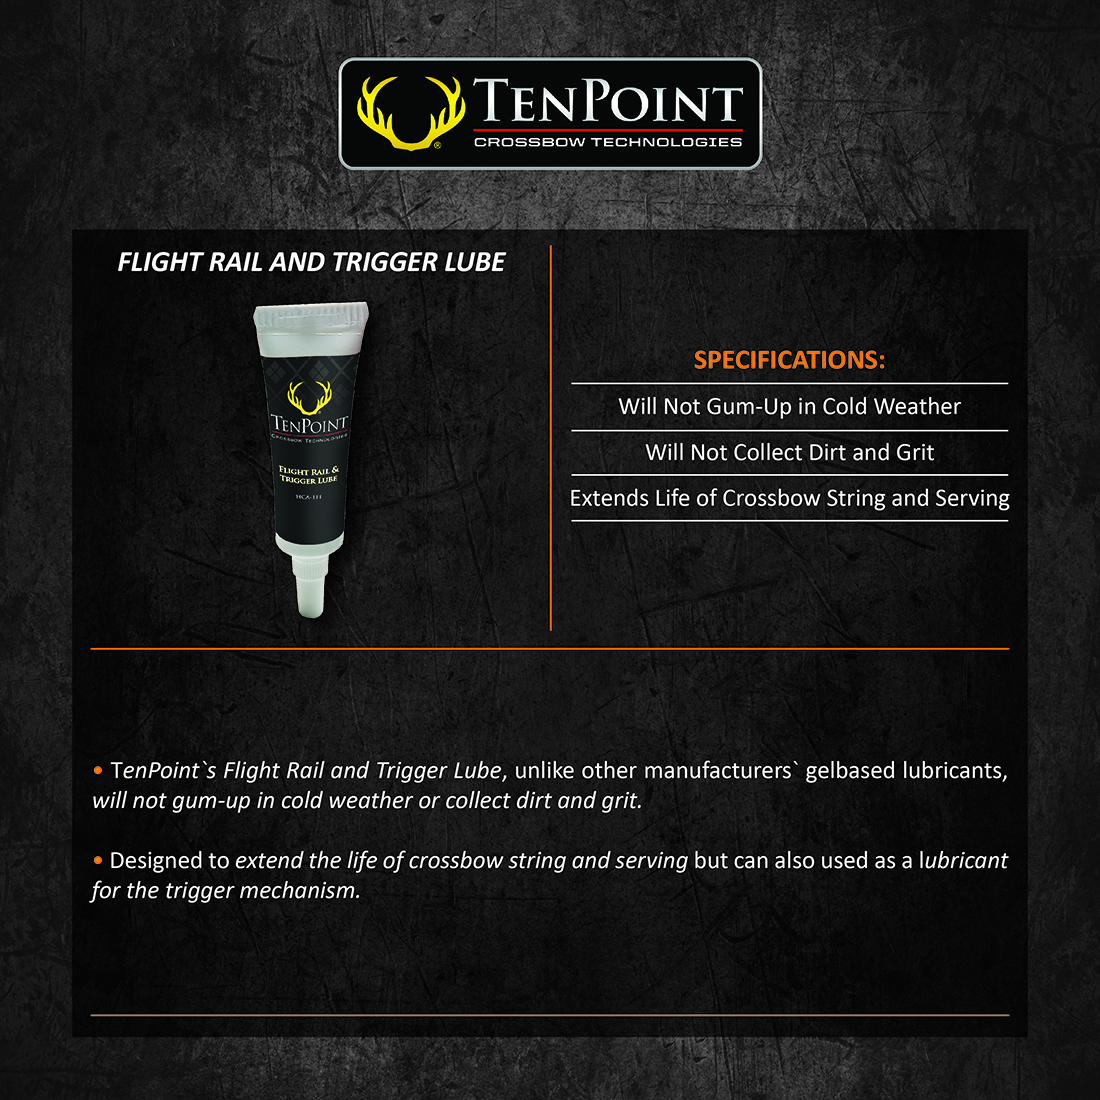 TenPoint_Flight_Rail_and_Tigger_Lube_Product_Description